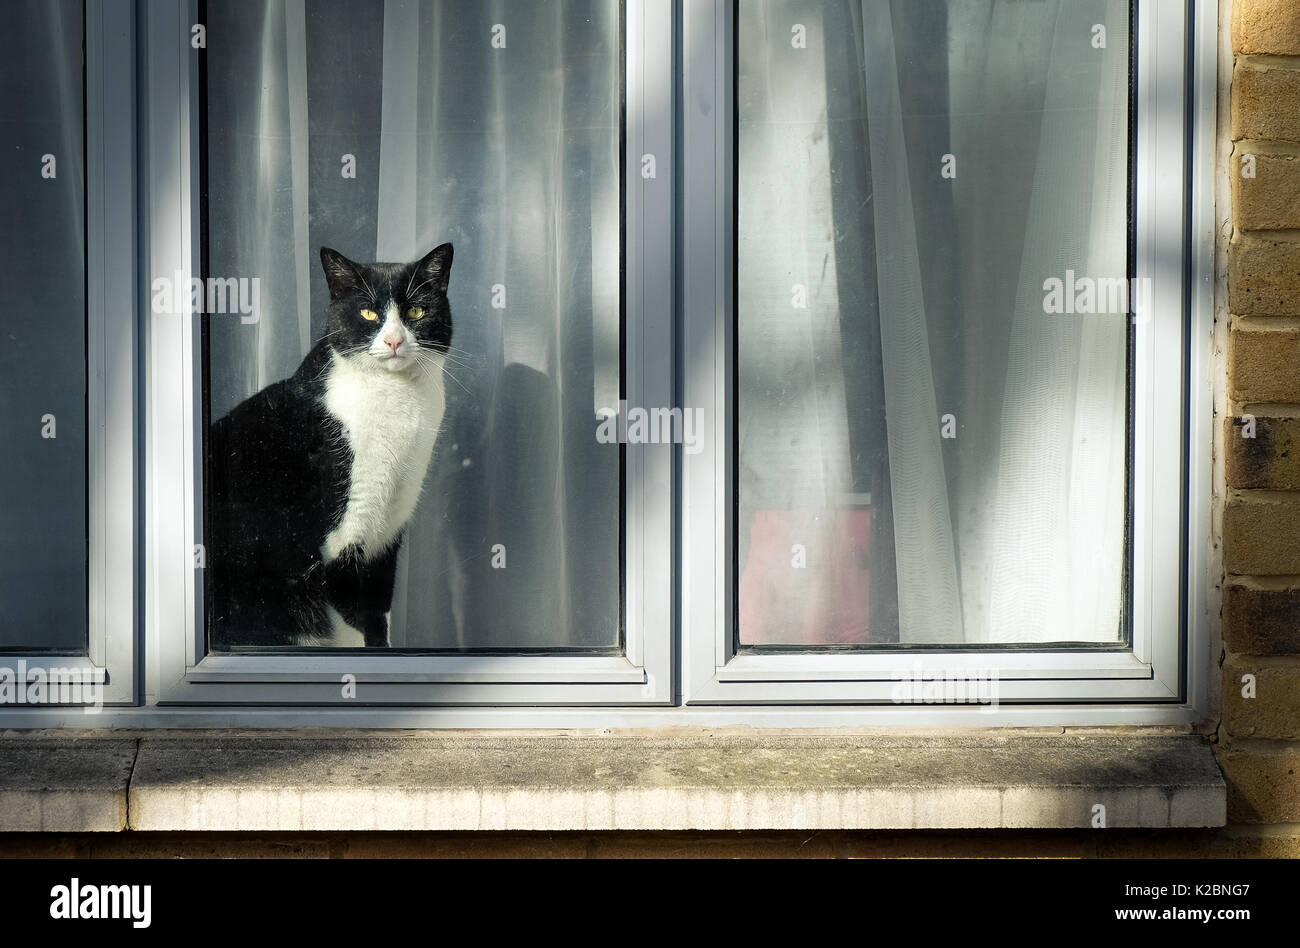 Curieux chat noir et blanc assis sur la fenêtre et regardant city street Banque D'Images